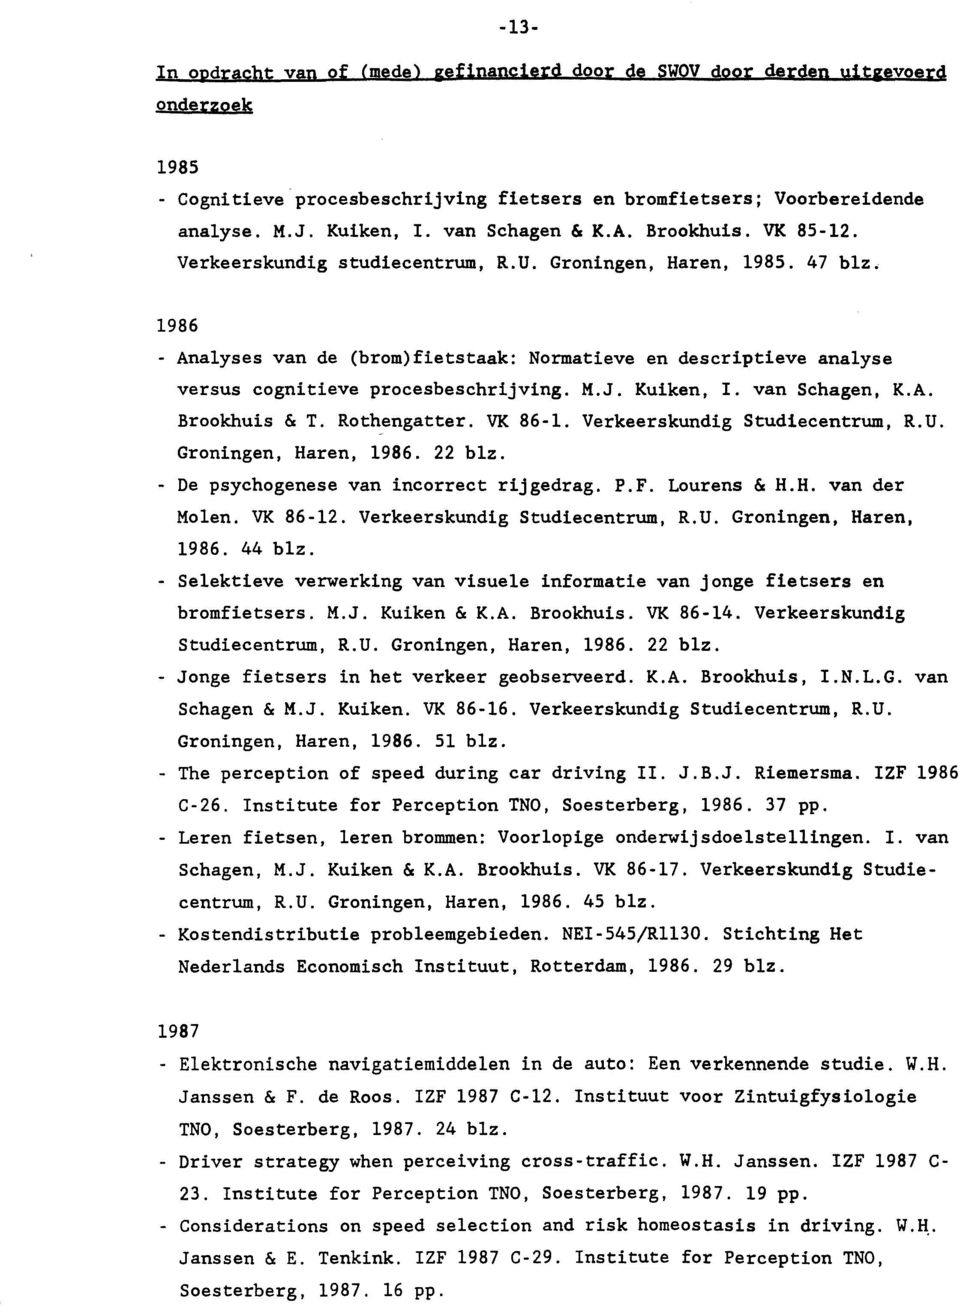 1986 - Analyses van de (brom)fietstaak: Normatieve en descriptieve analyse versus cognitieve procesbeschrijving. M.J. Kuiken, I. van Schagen, K.A. Brookhuis & T. Rothengatter. VK 86-1.